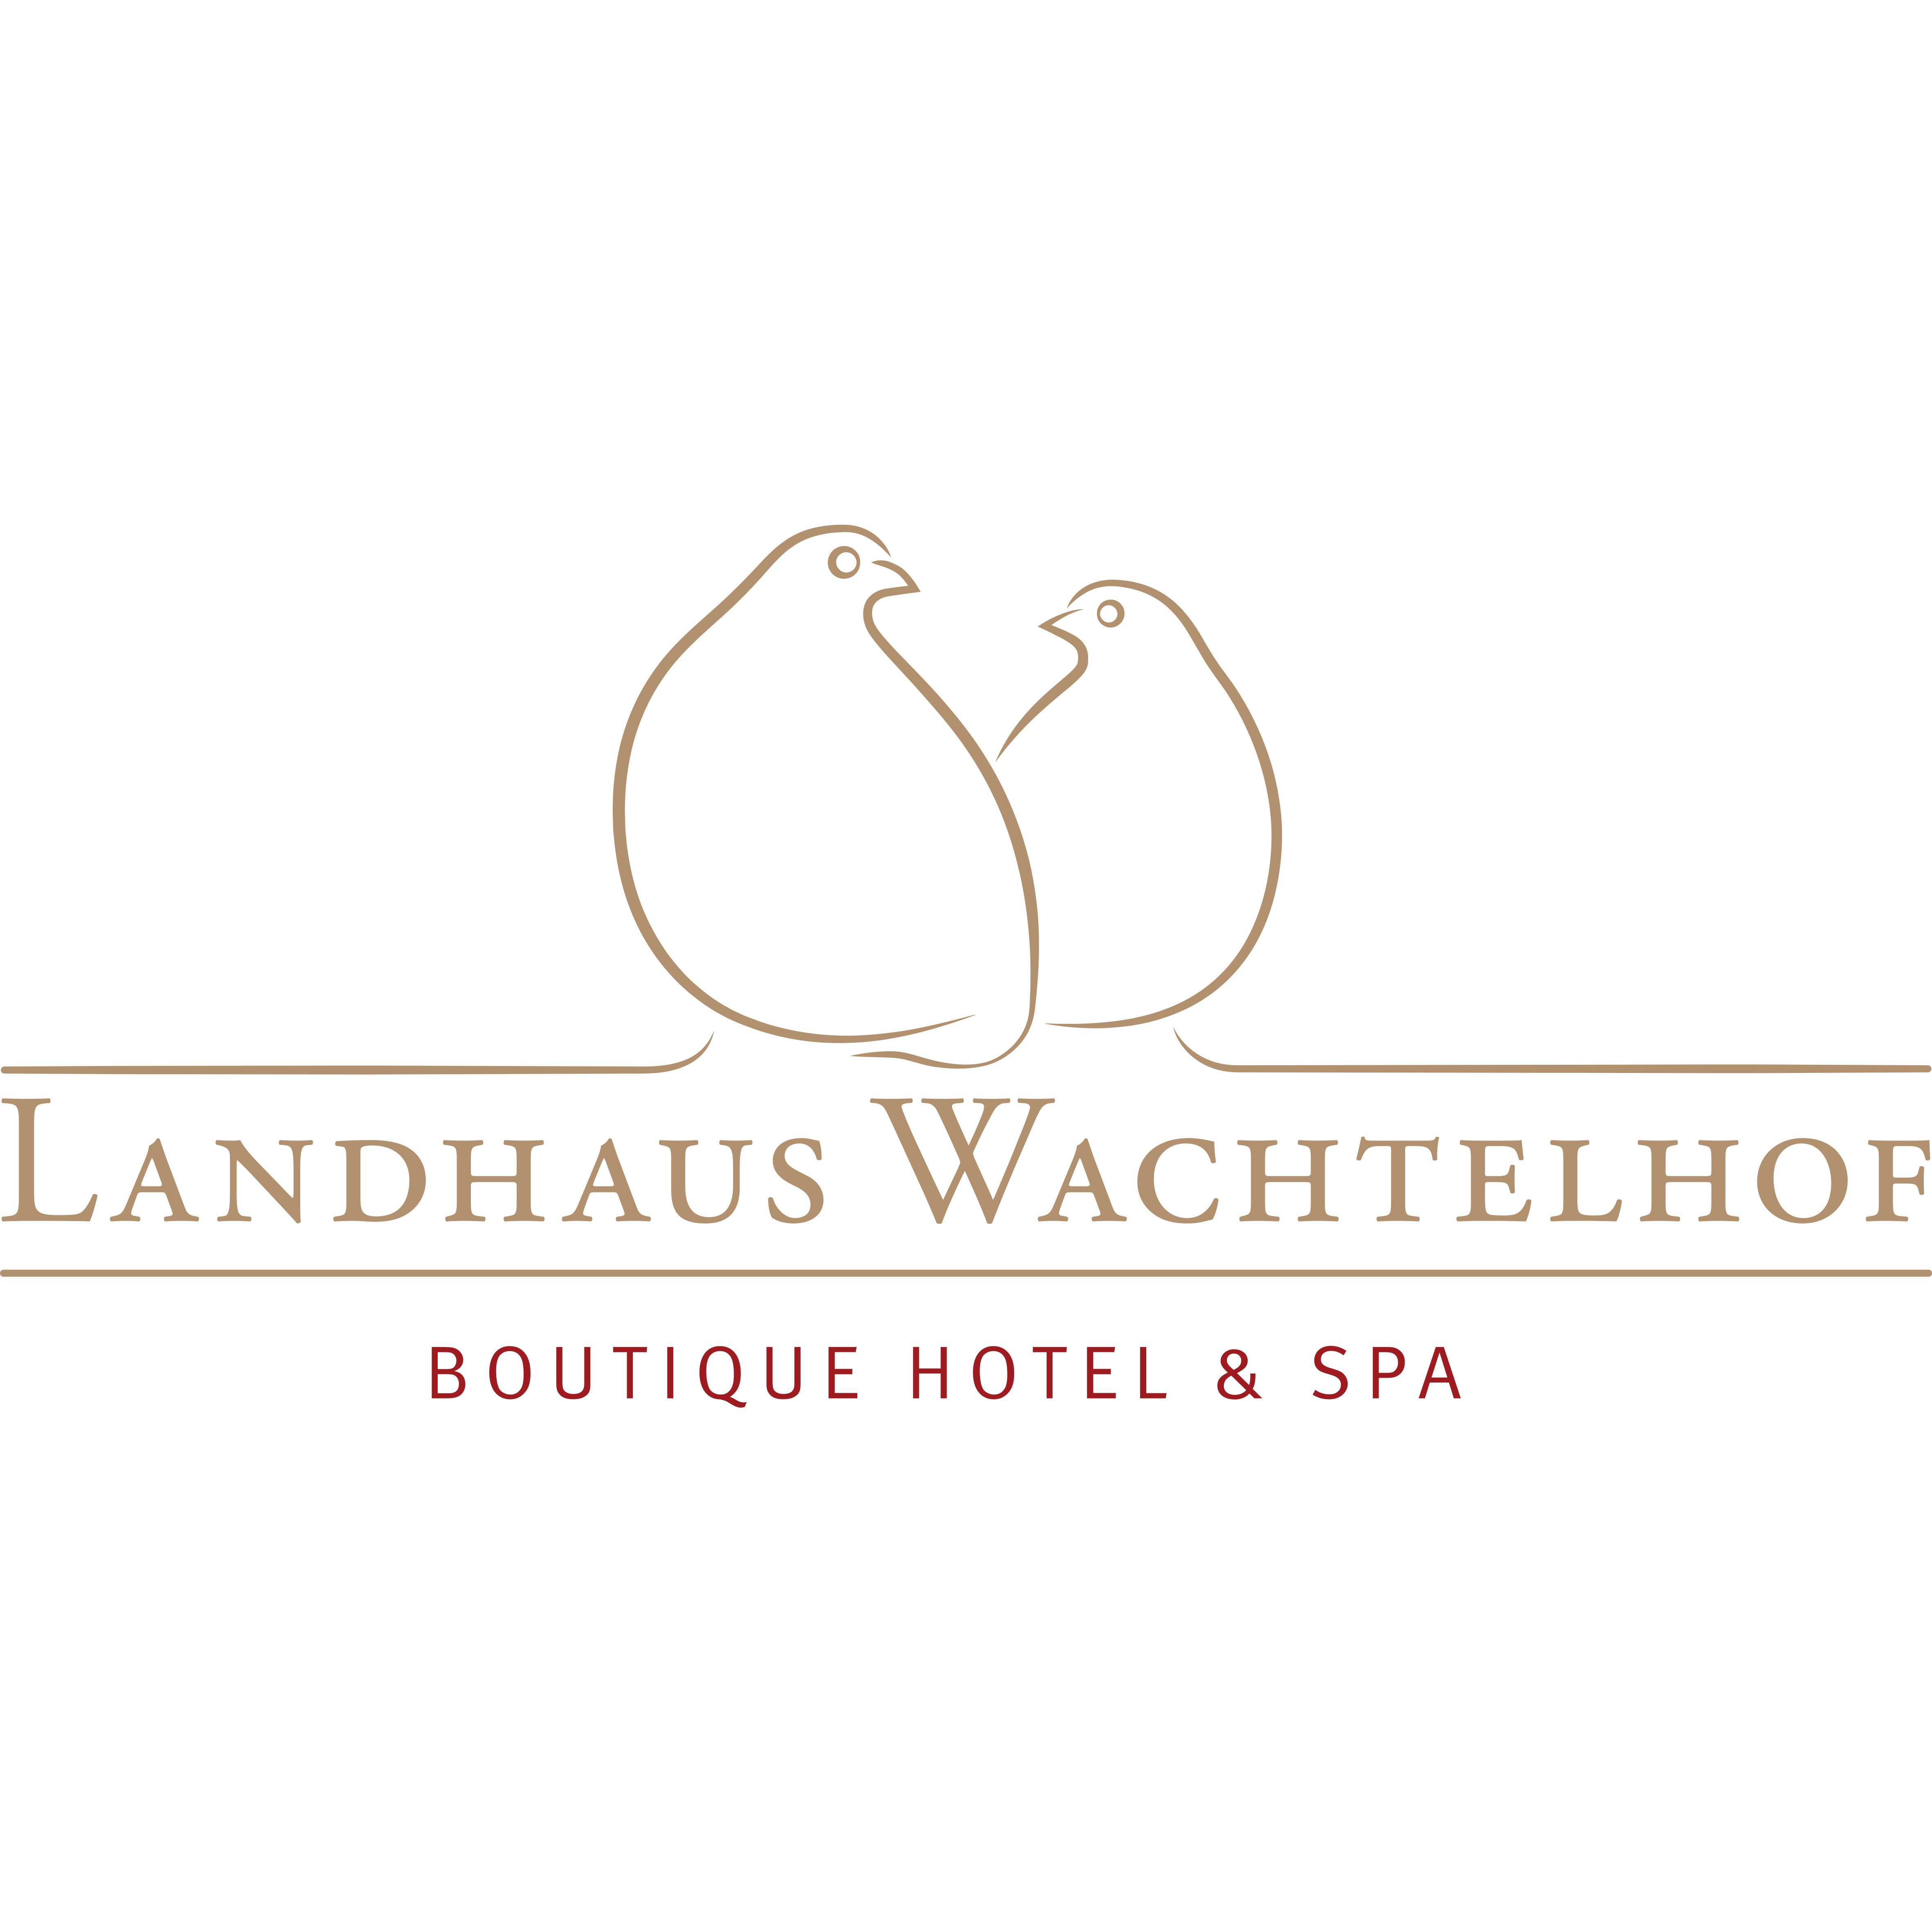 Logo Hotel Landhaus Wachtelhof